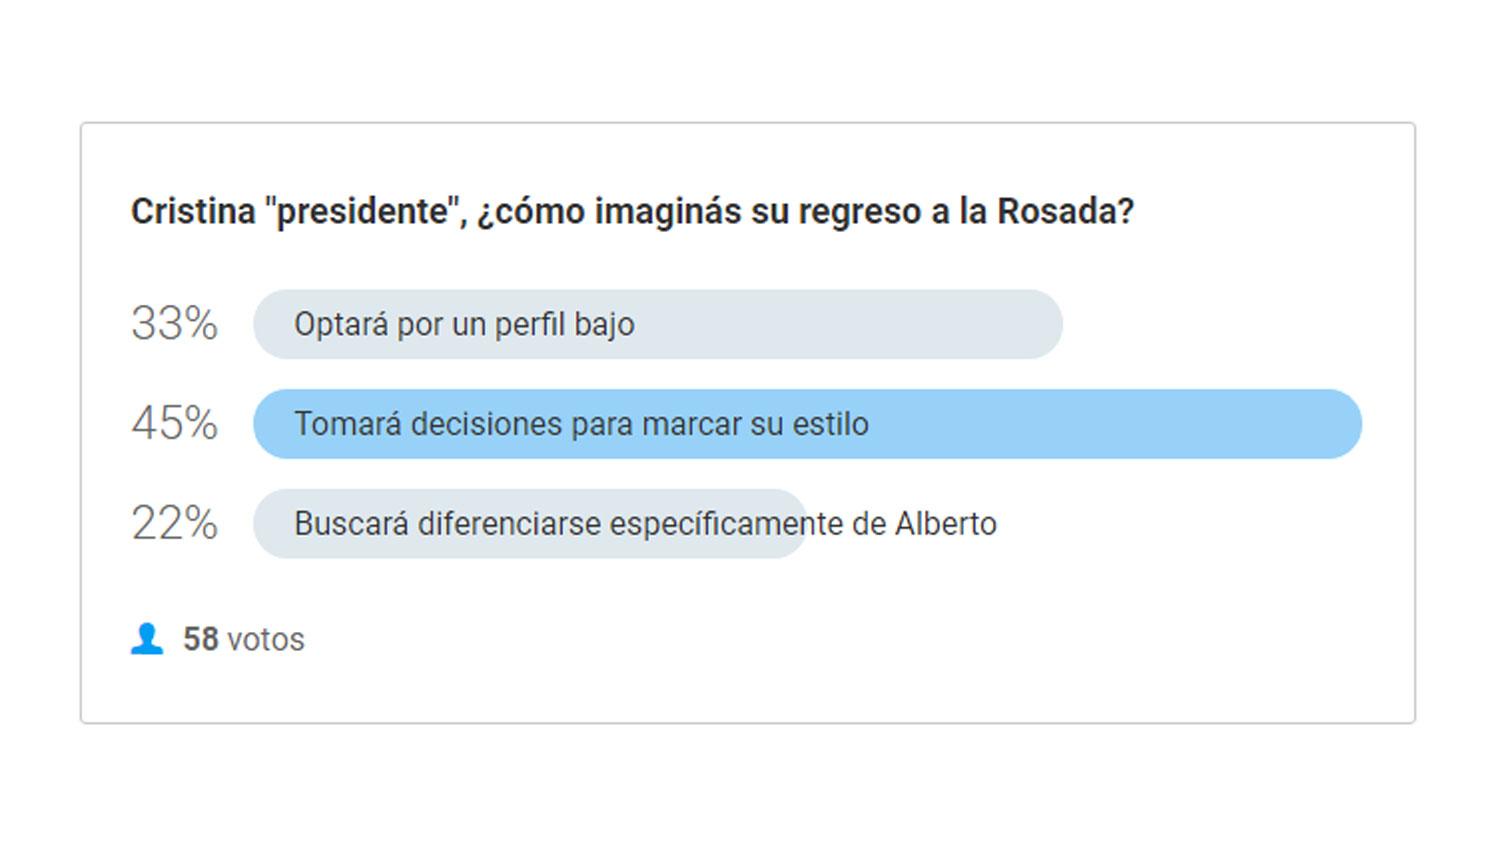 Los lectores creen que Cristina Fernández marcará su estilo en su regreso a la Rosada